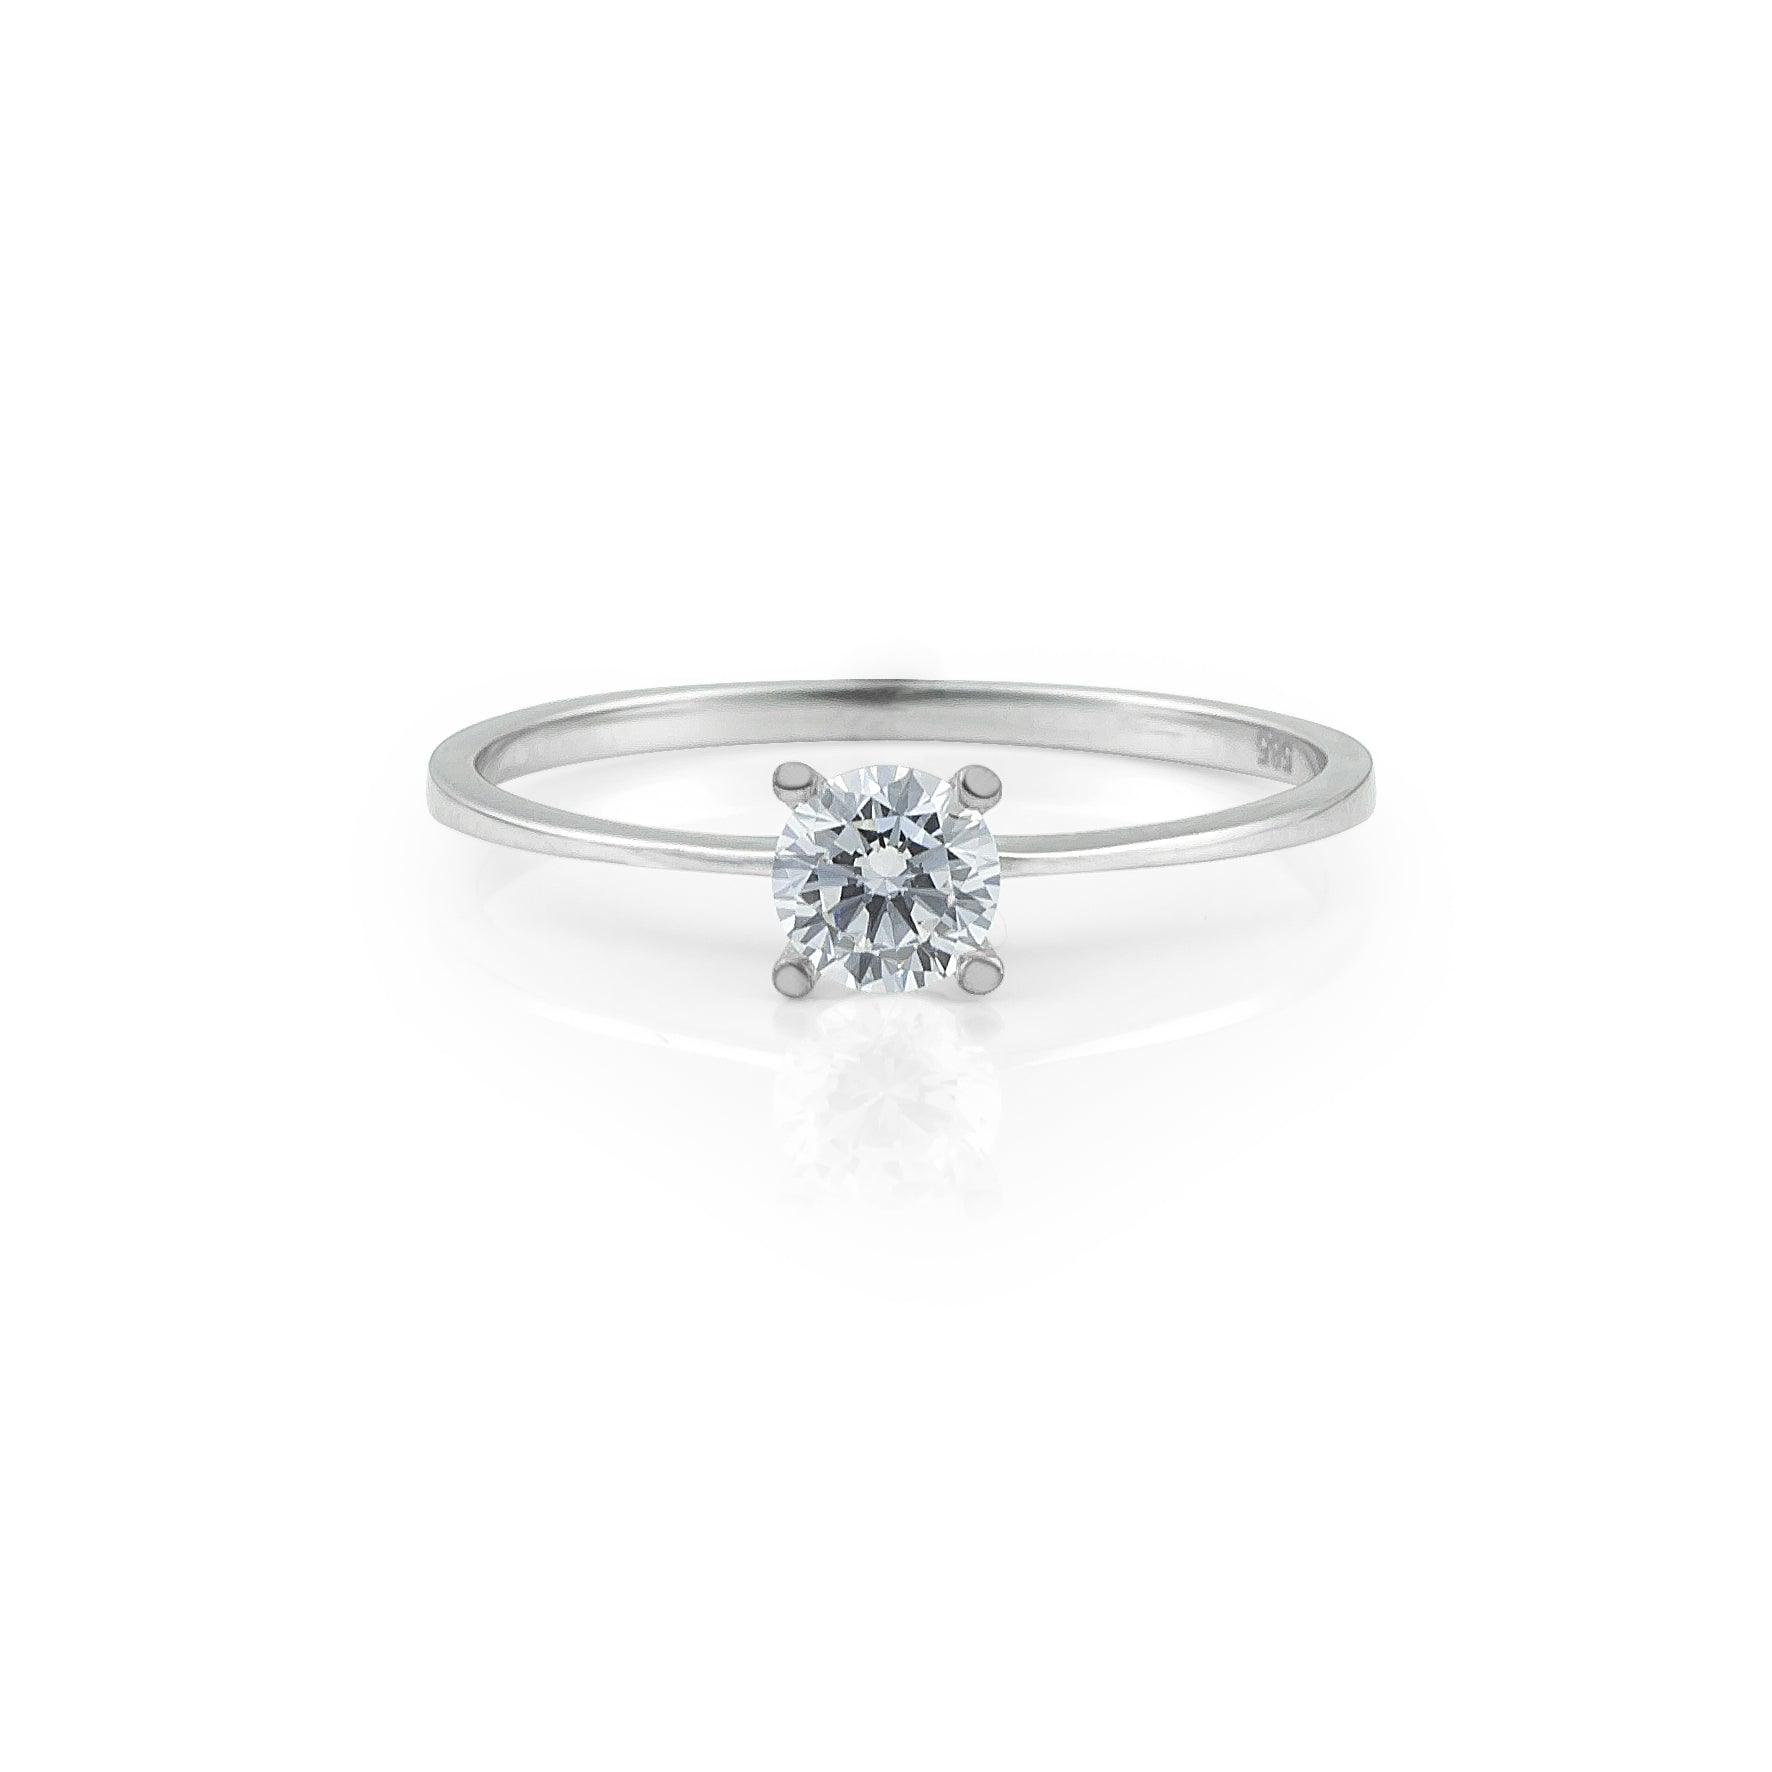 Μονόπετρο δαχτυλίδι γάμου με κεντρικό διαμάντι σε καστόνι σχήματος "V" κατασκευασμένο από λευκόχρυσο.